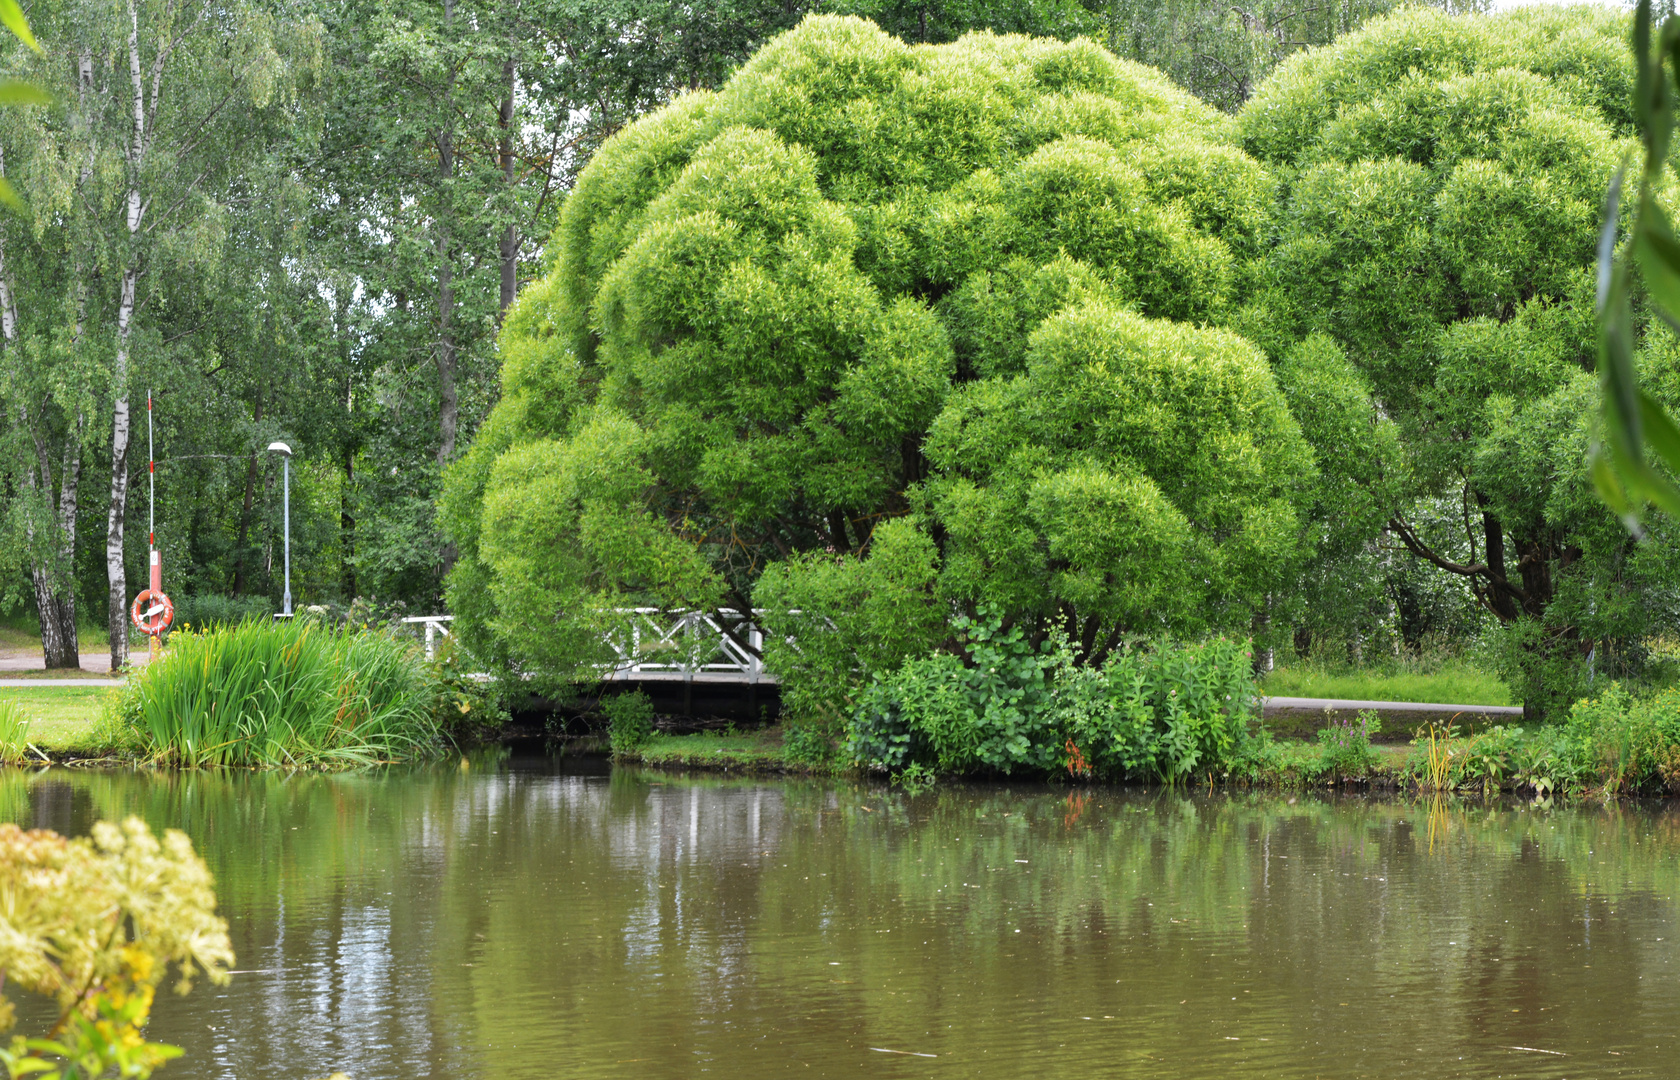 The Salix euxina ’Bullata